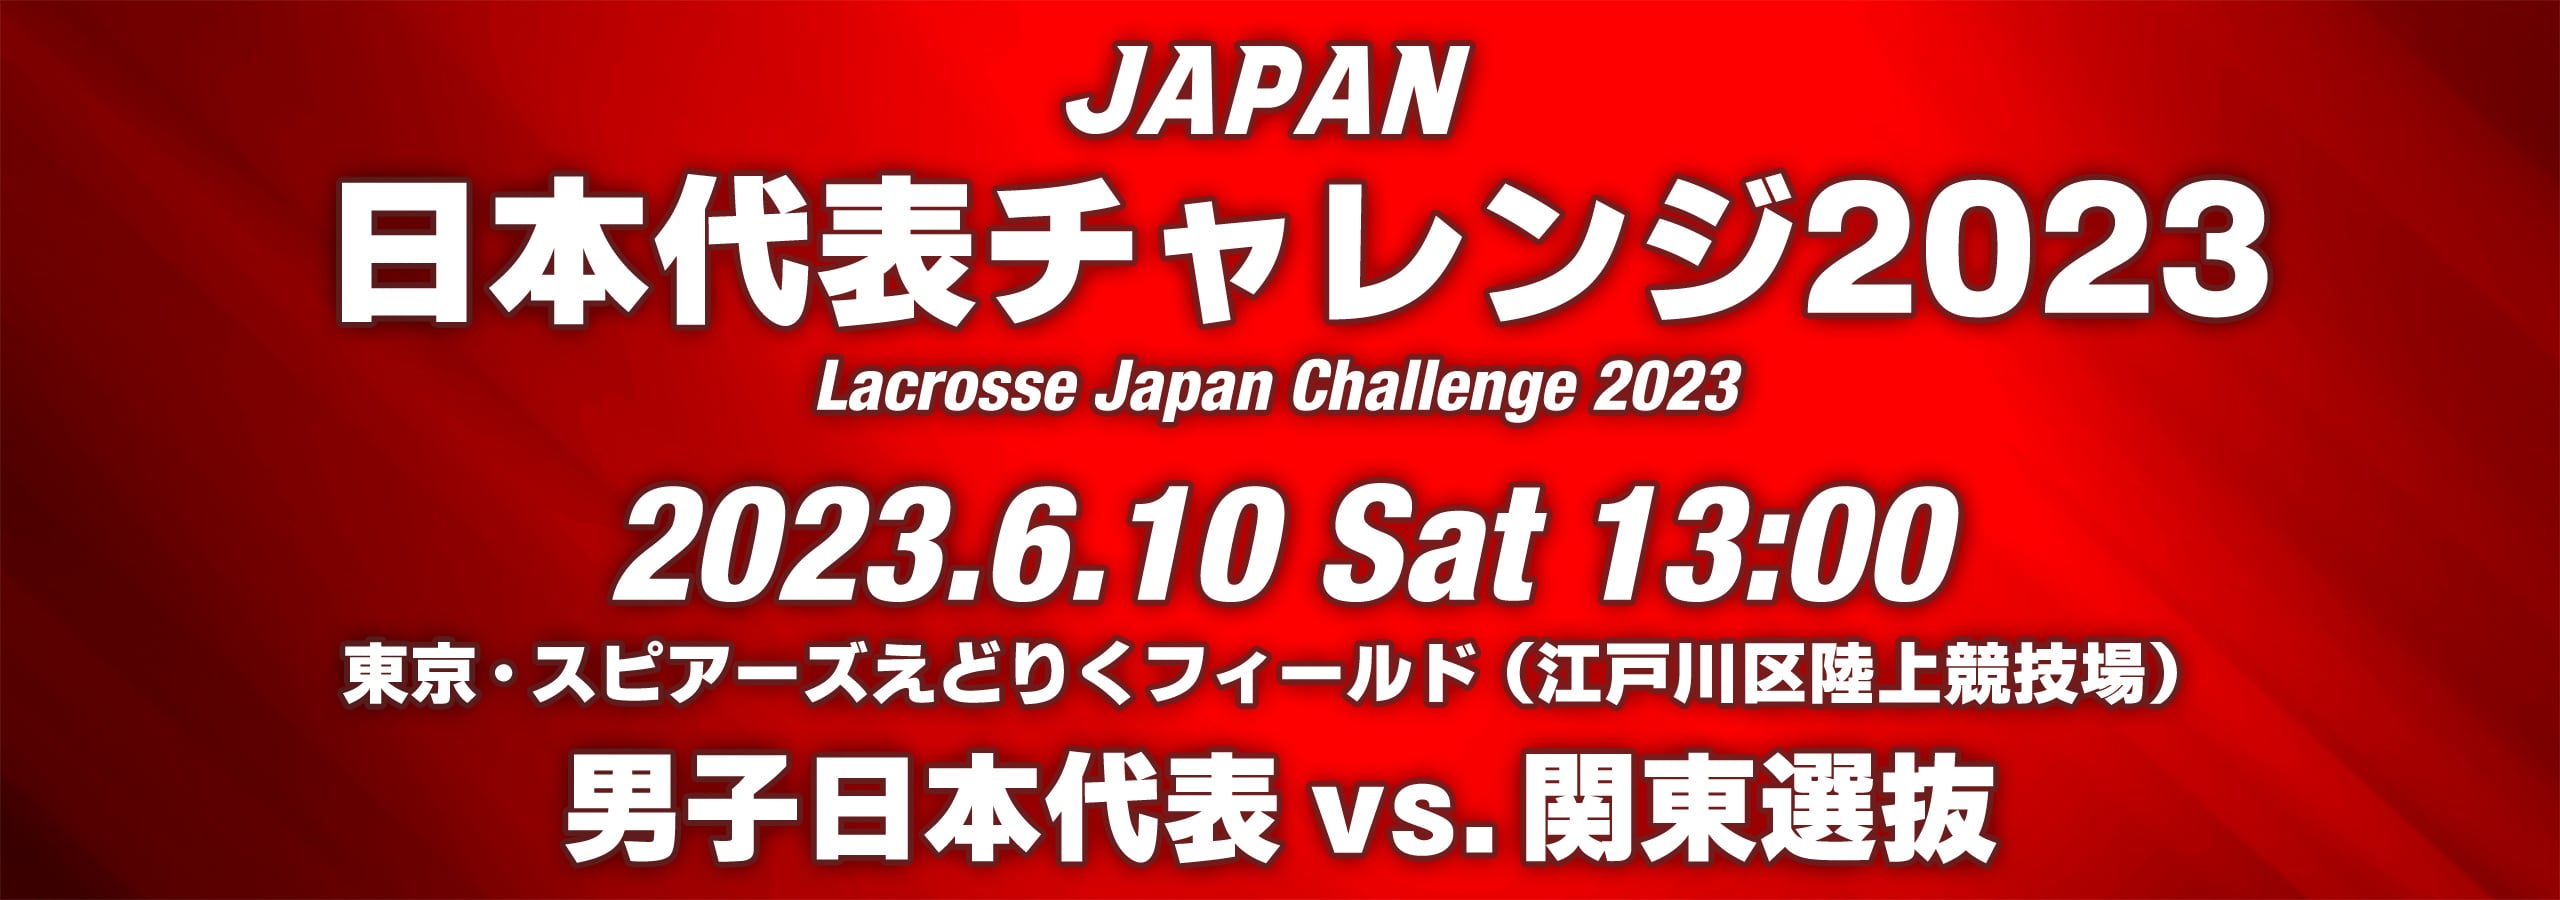 JAPAN 日本代表チャレンジ 2023 2023年6月10日 13 : 00 東京・スビアーズえどりくフィールド (江戸区陸上競技場) 男子日本代表 vs 関東選抜 